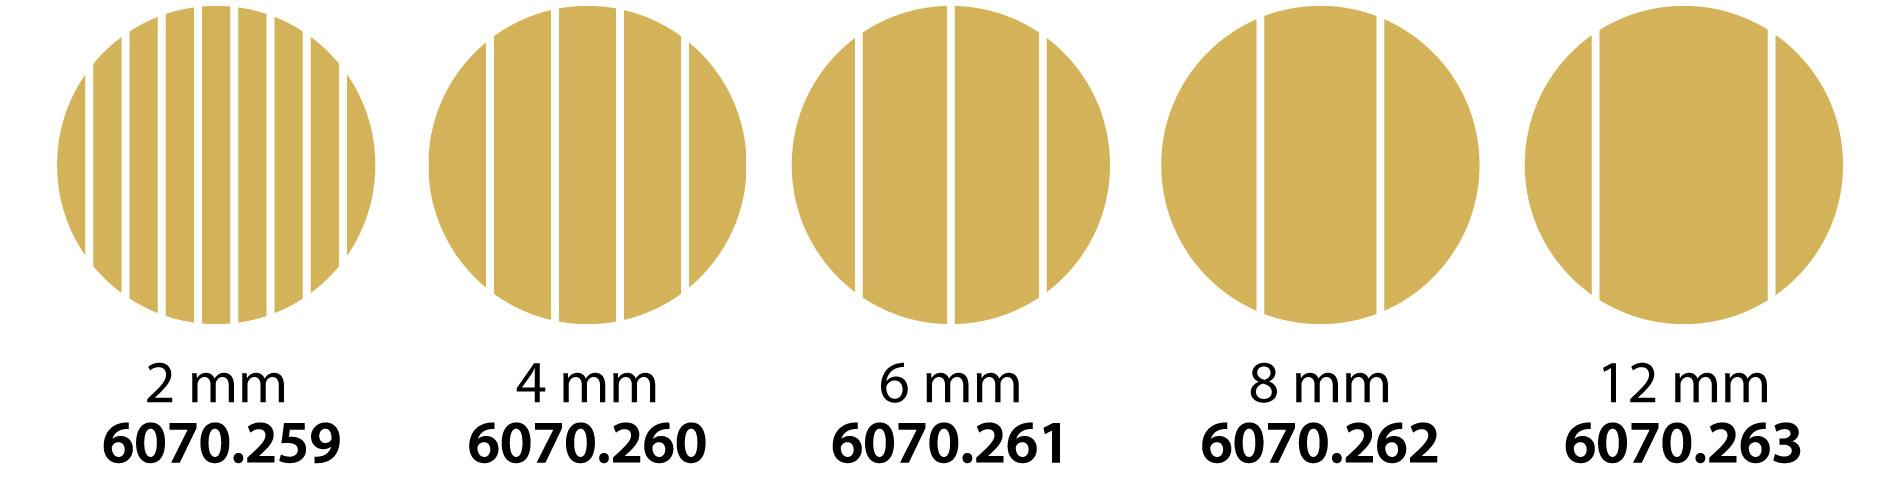 Accessorio taglia pasta in 5 misure diverse